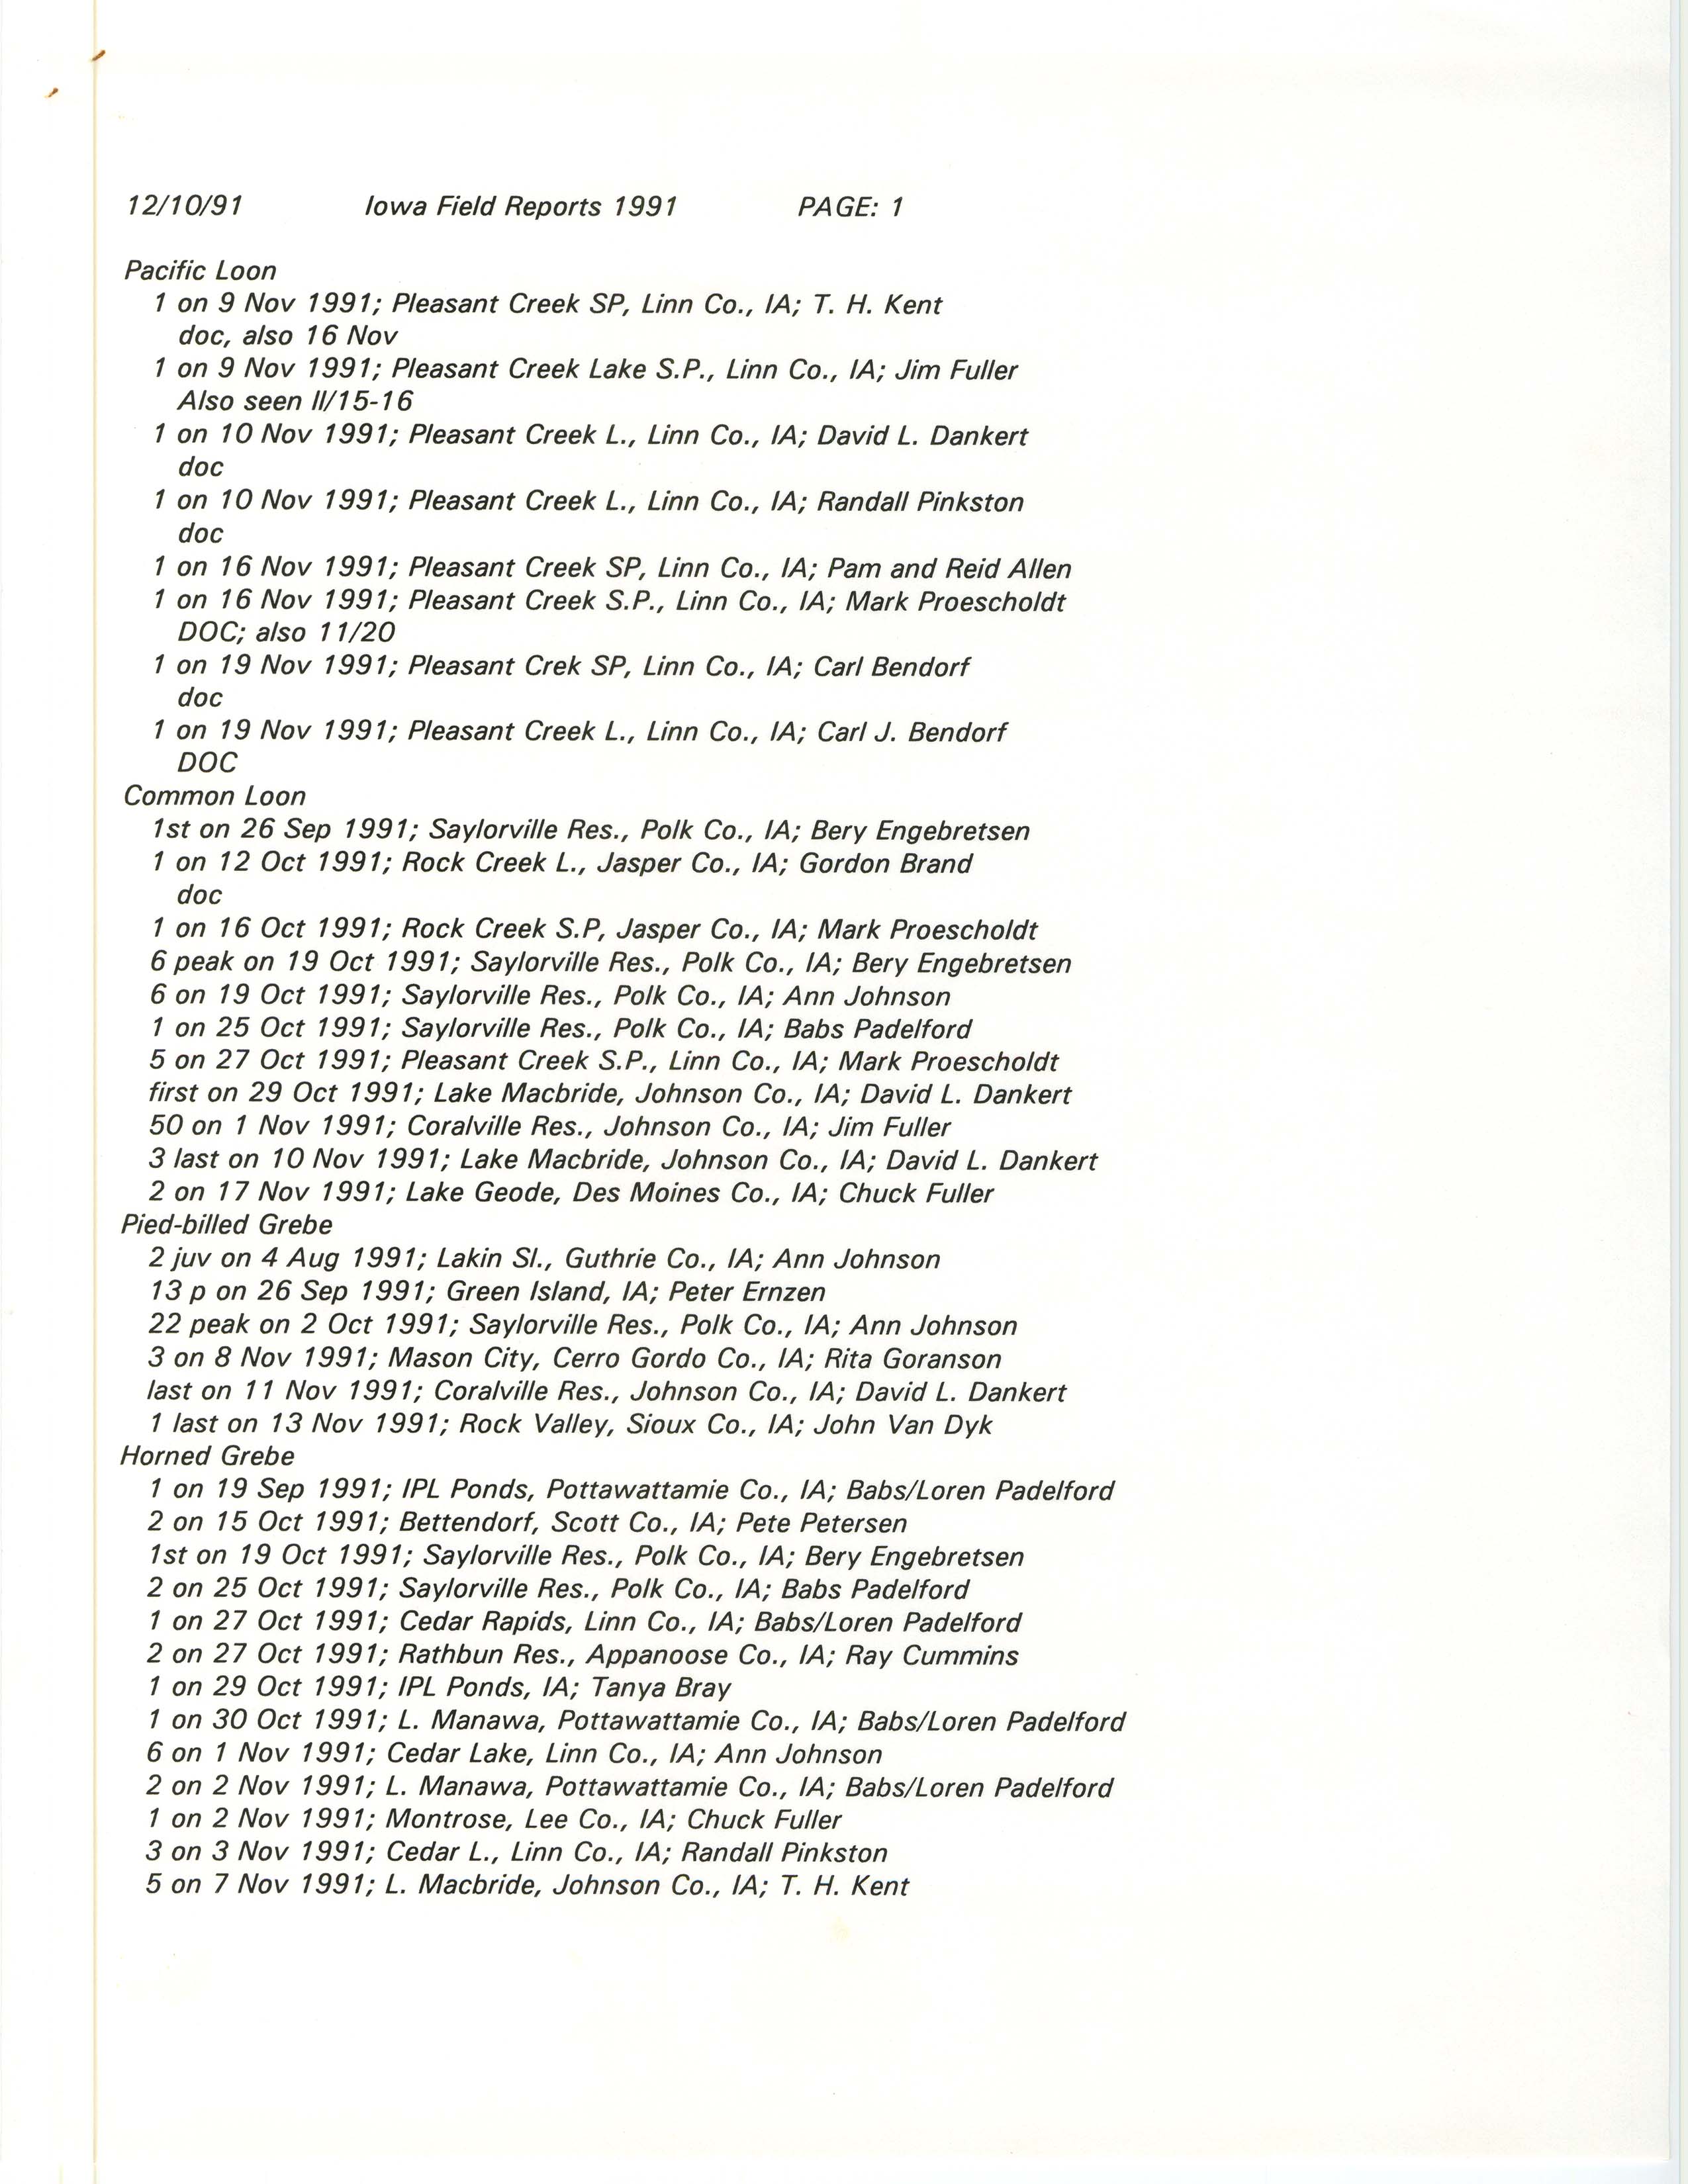 Iowa field reports 1991, December 10, 1991